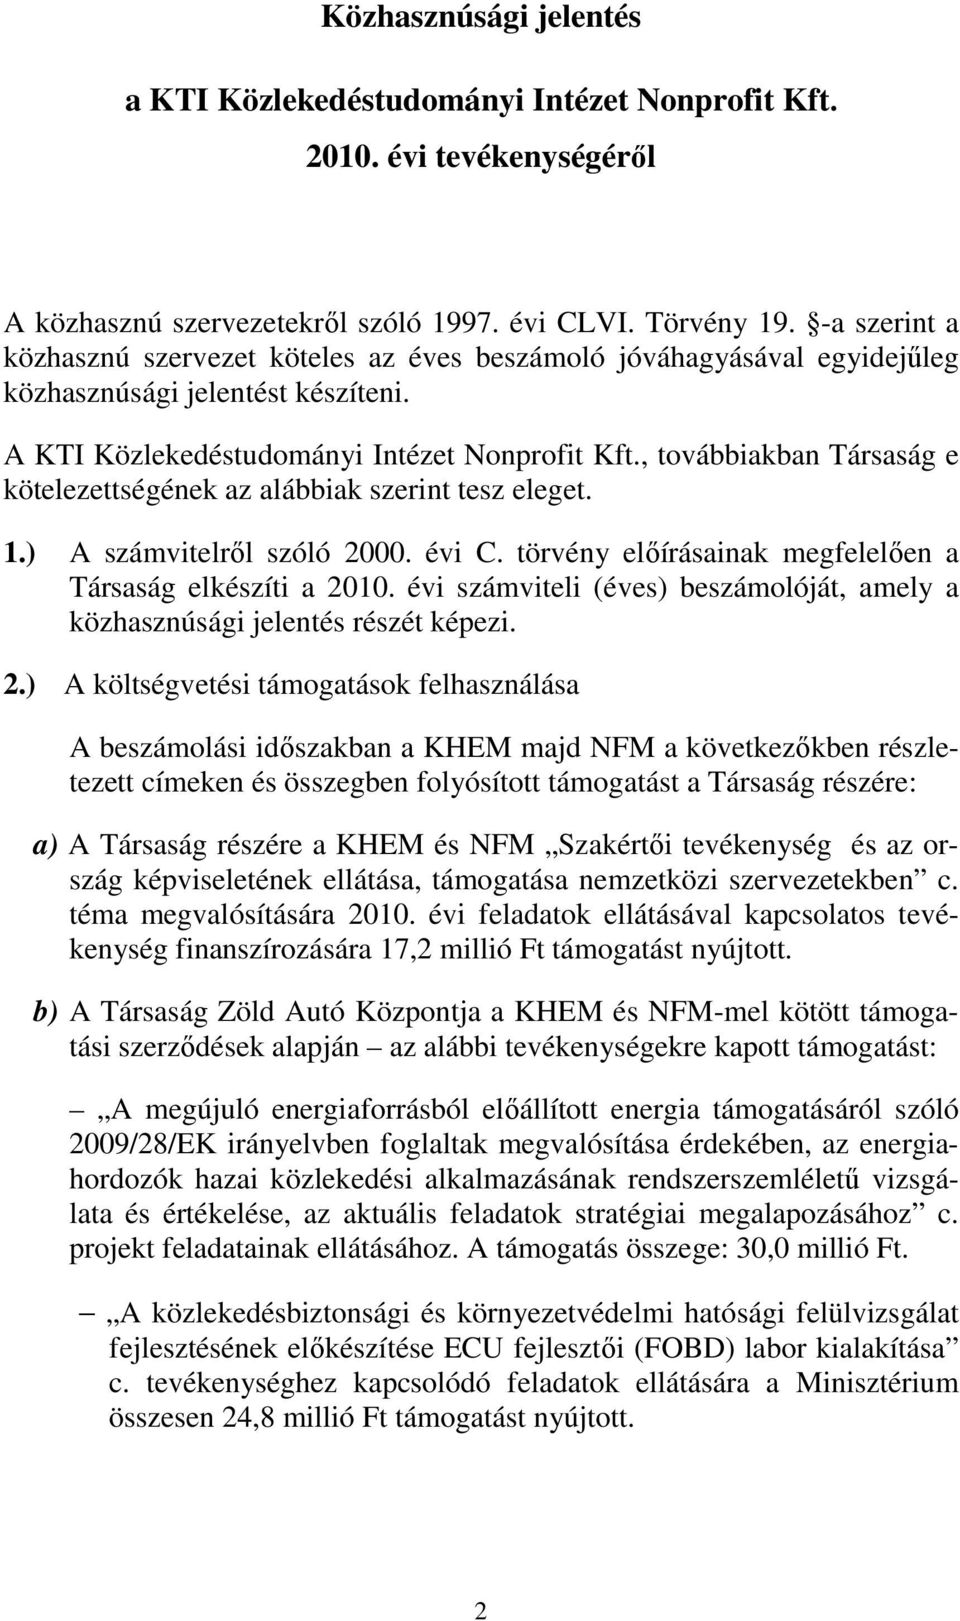 , továbbiakban Társaság e kötelezettségének az alábbiak szerint tesz eleget. 1.) A számvitelrıl szóló 2000. évi C. törvény elıírásainak megfelelıen a Társaság elkészíti a 2010.